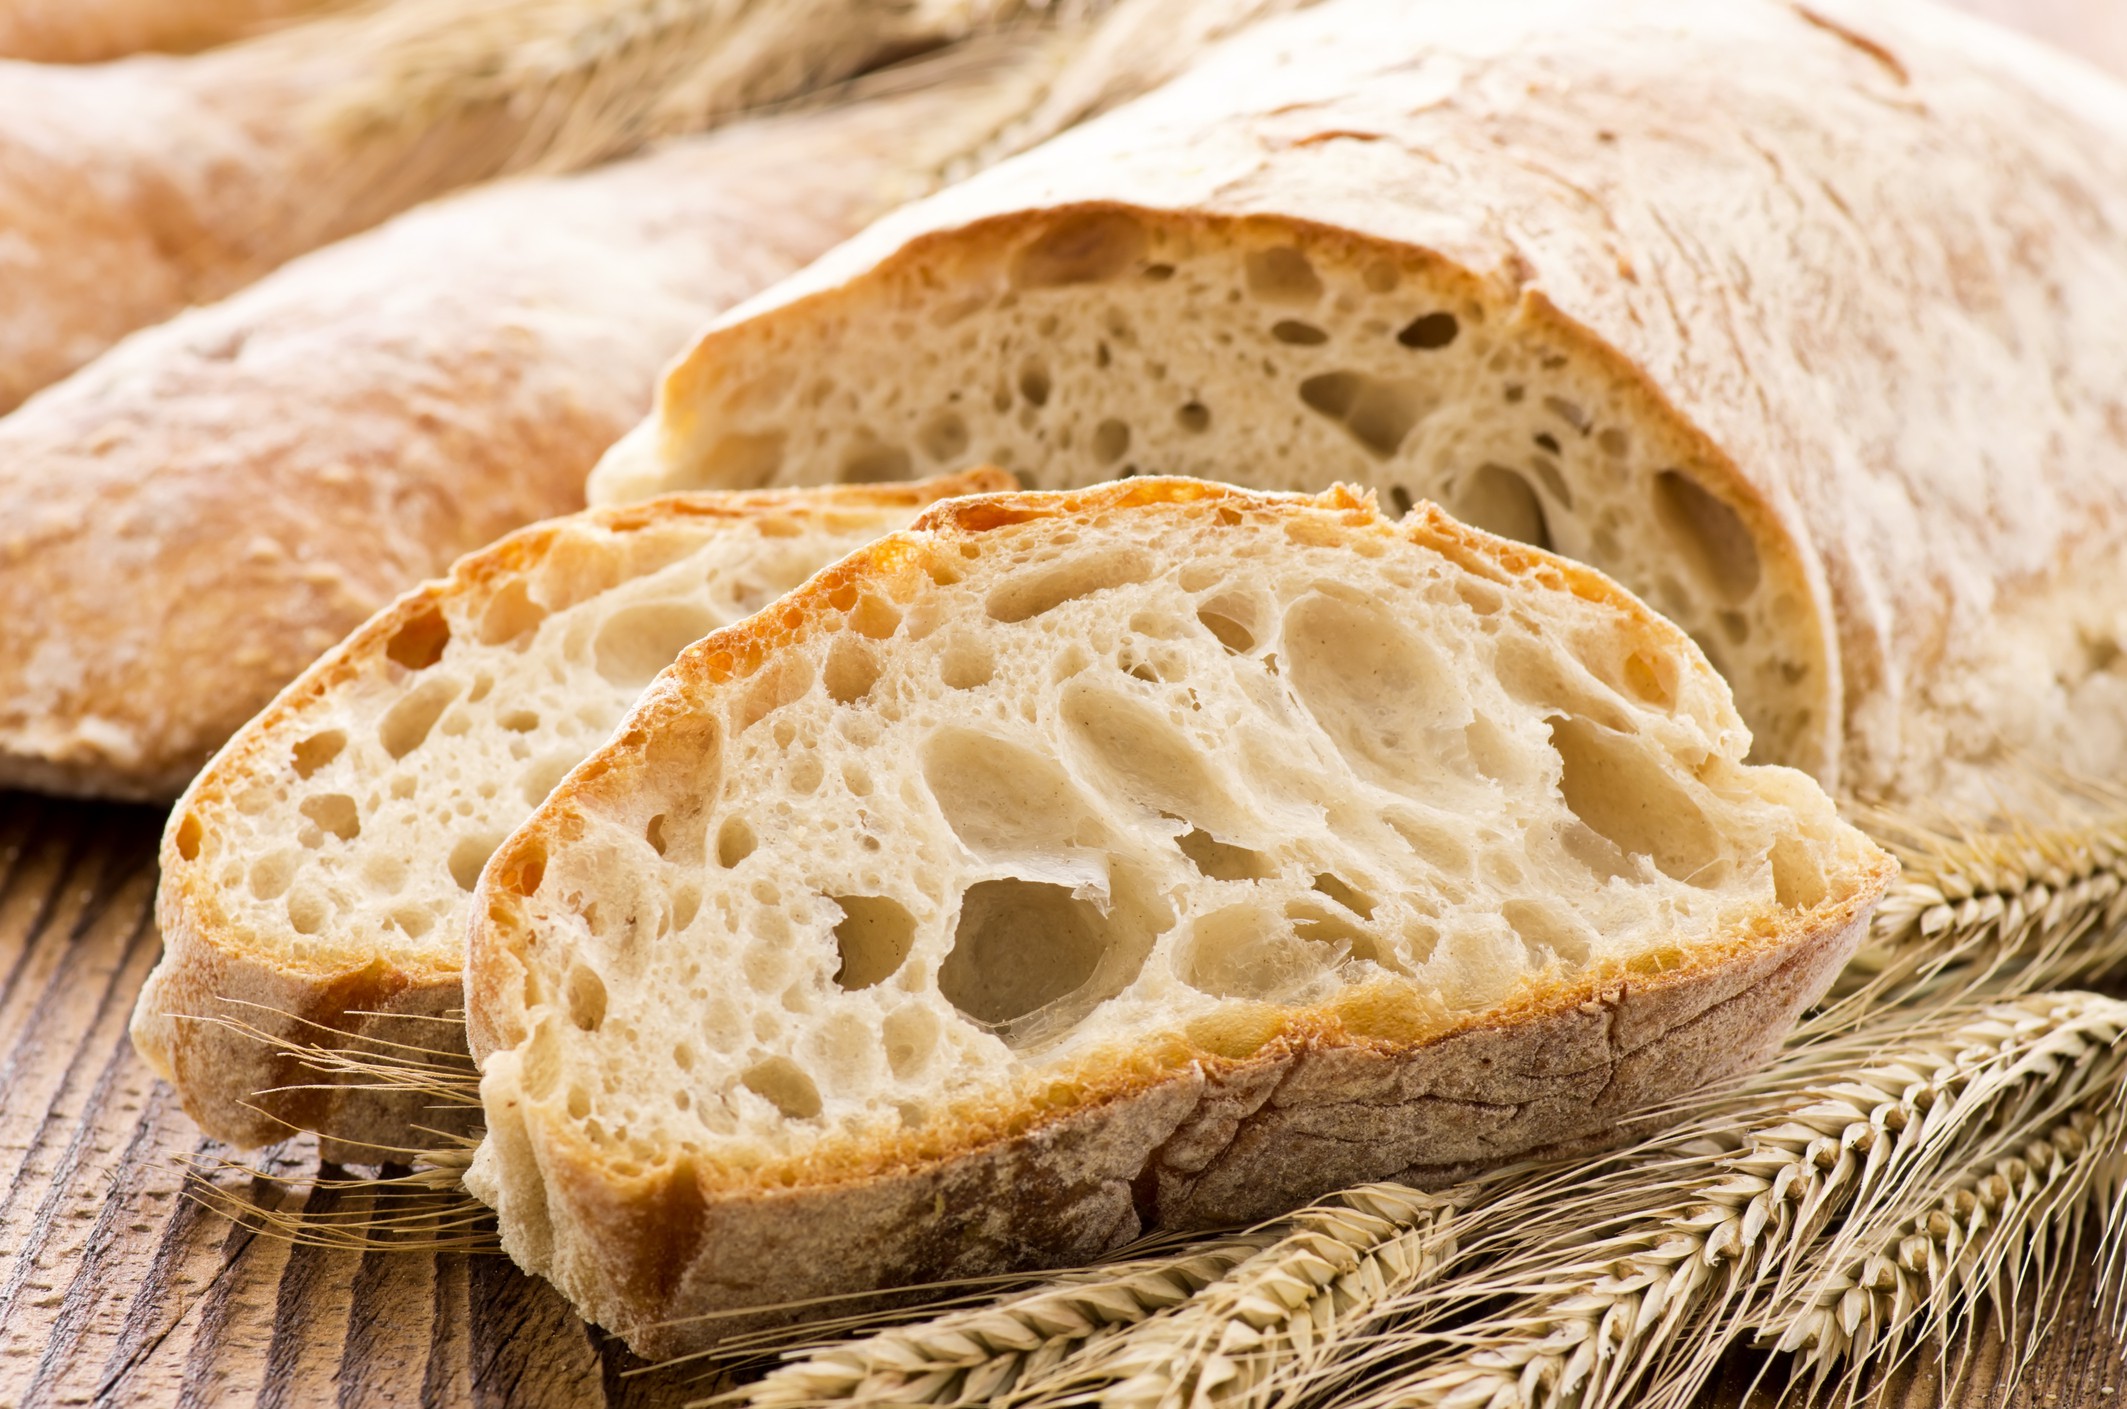 Ciabatta - rețeta originală de pâine italiană. Cum se prepară și cu se se mănâncă